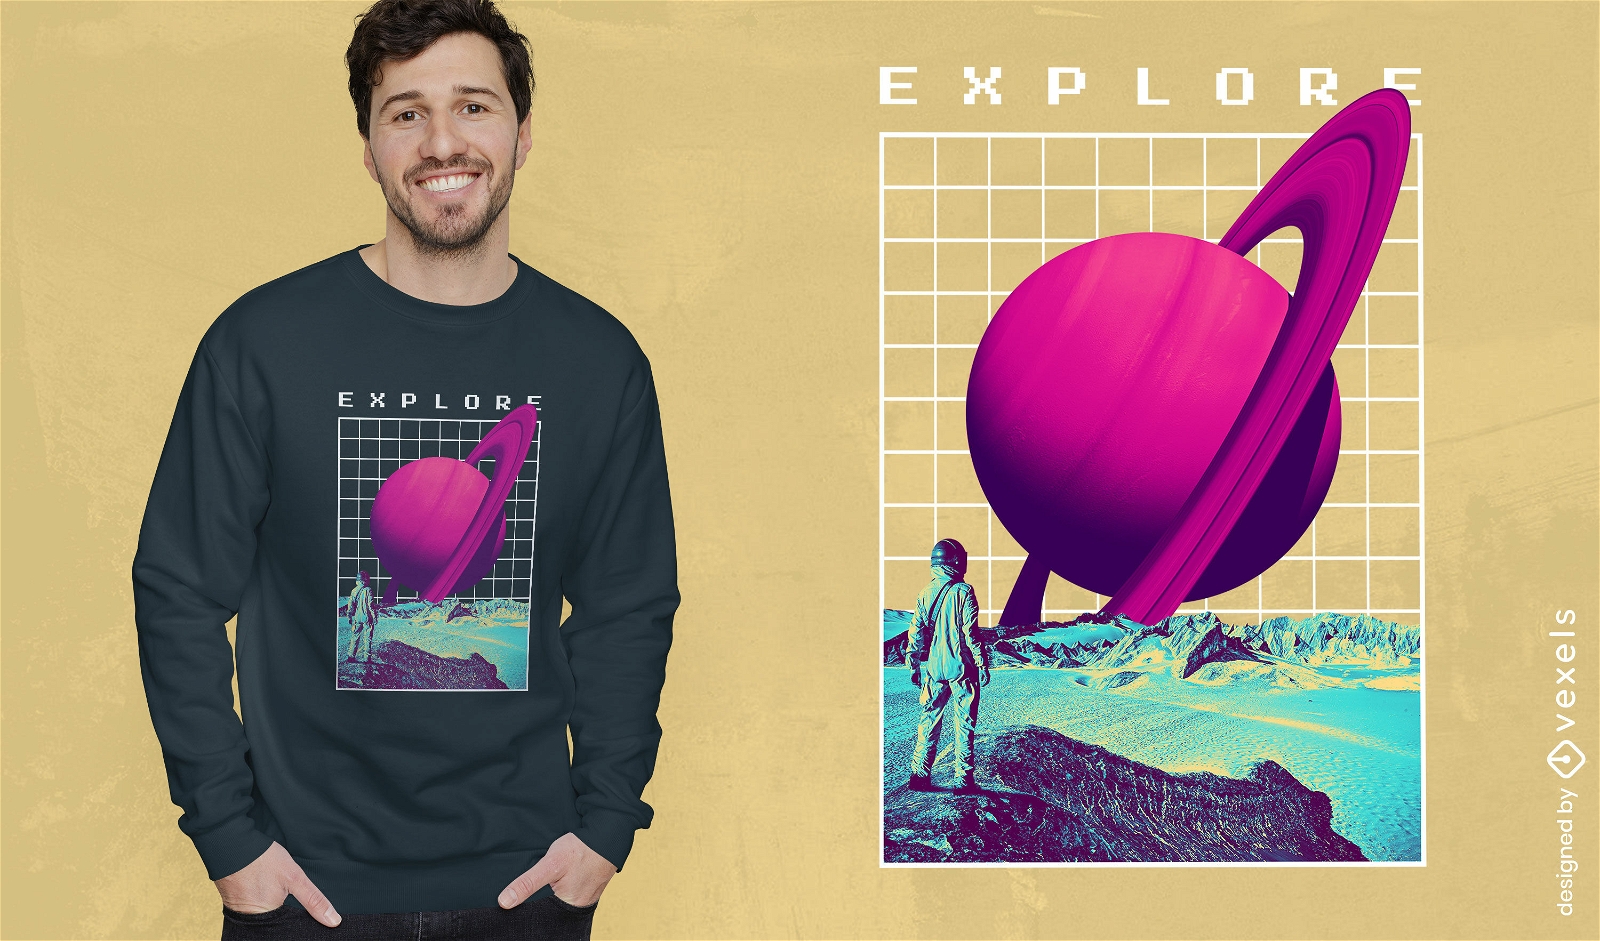 Saturn planet vaporwave t-shirt design